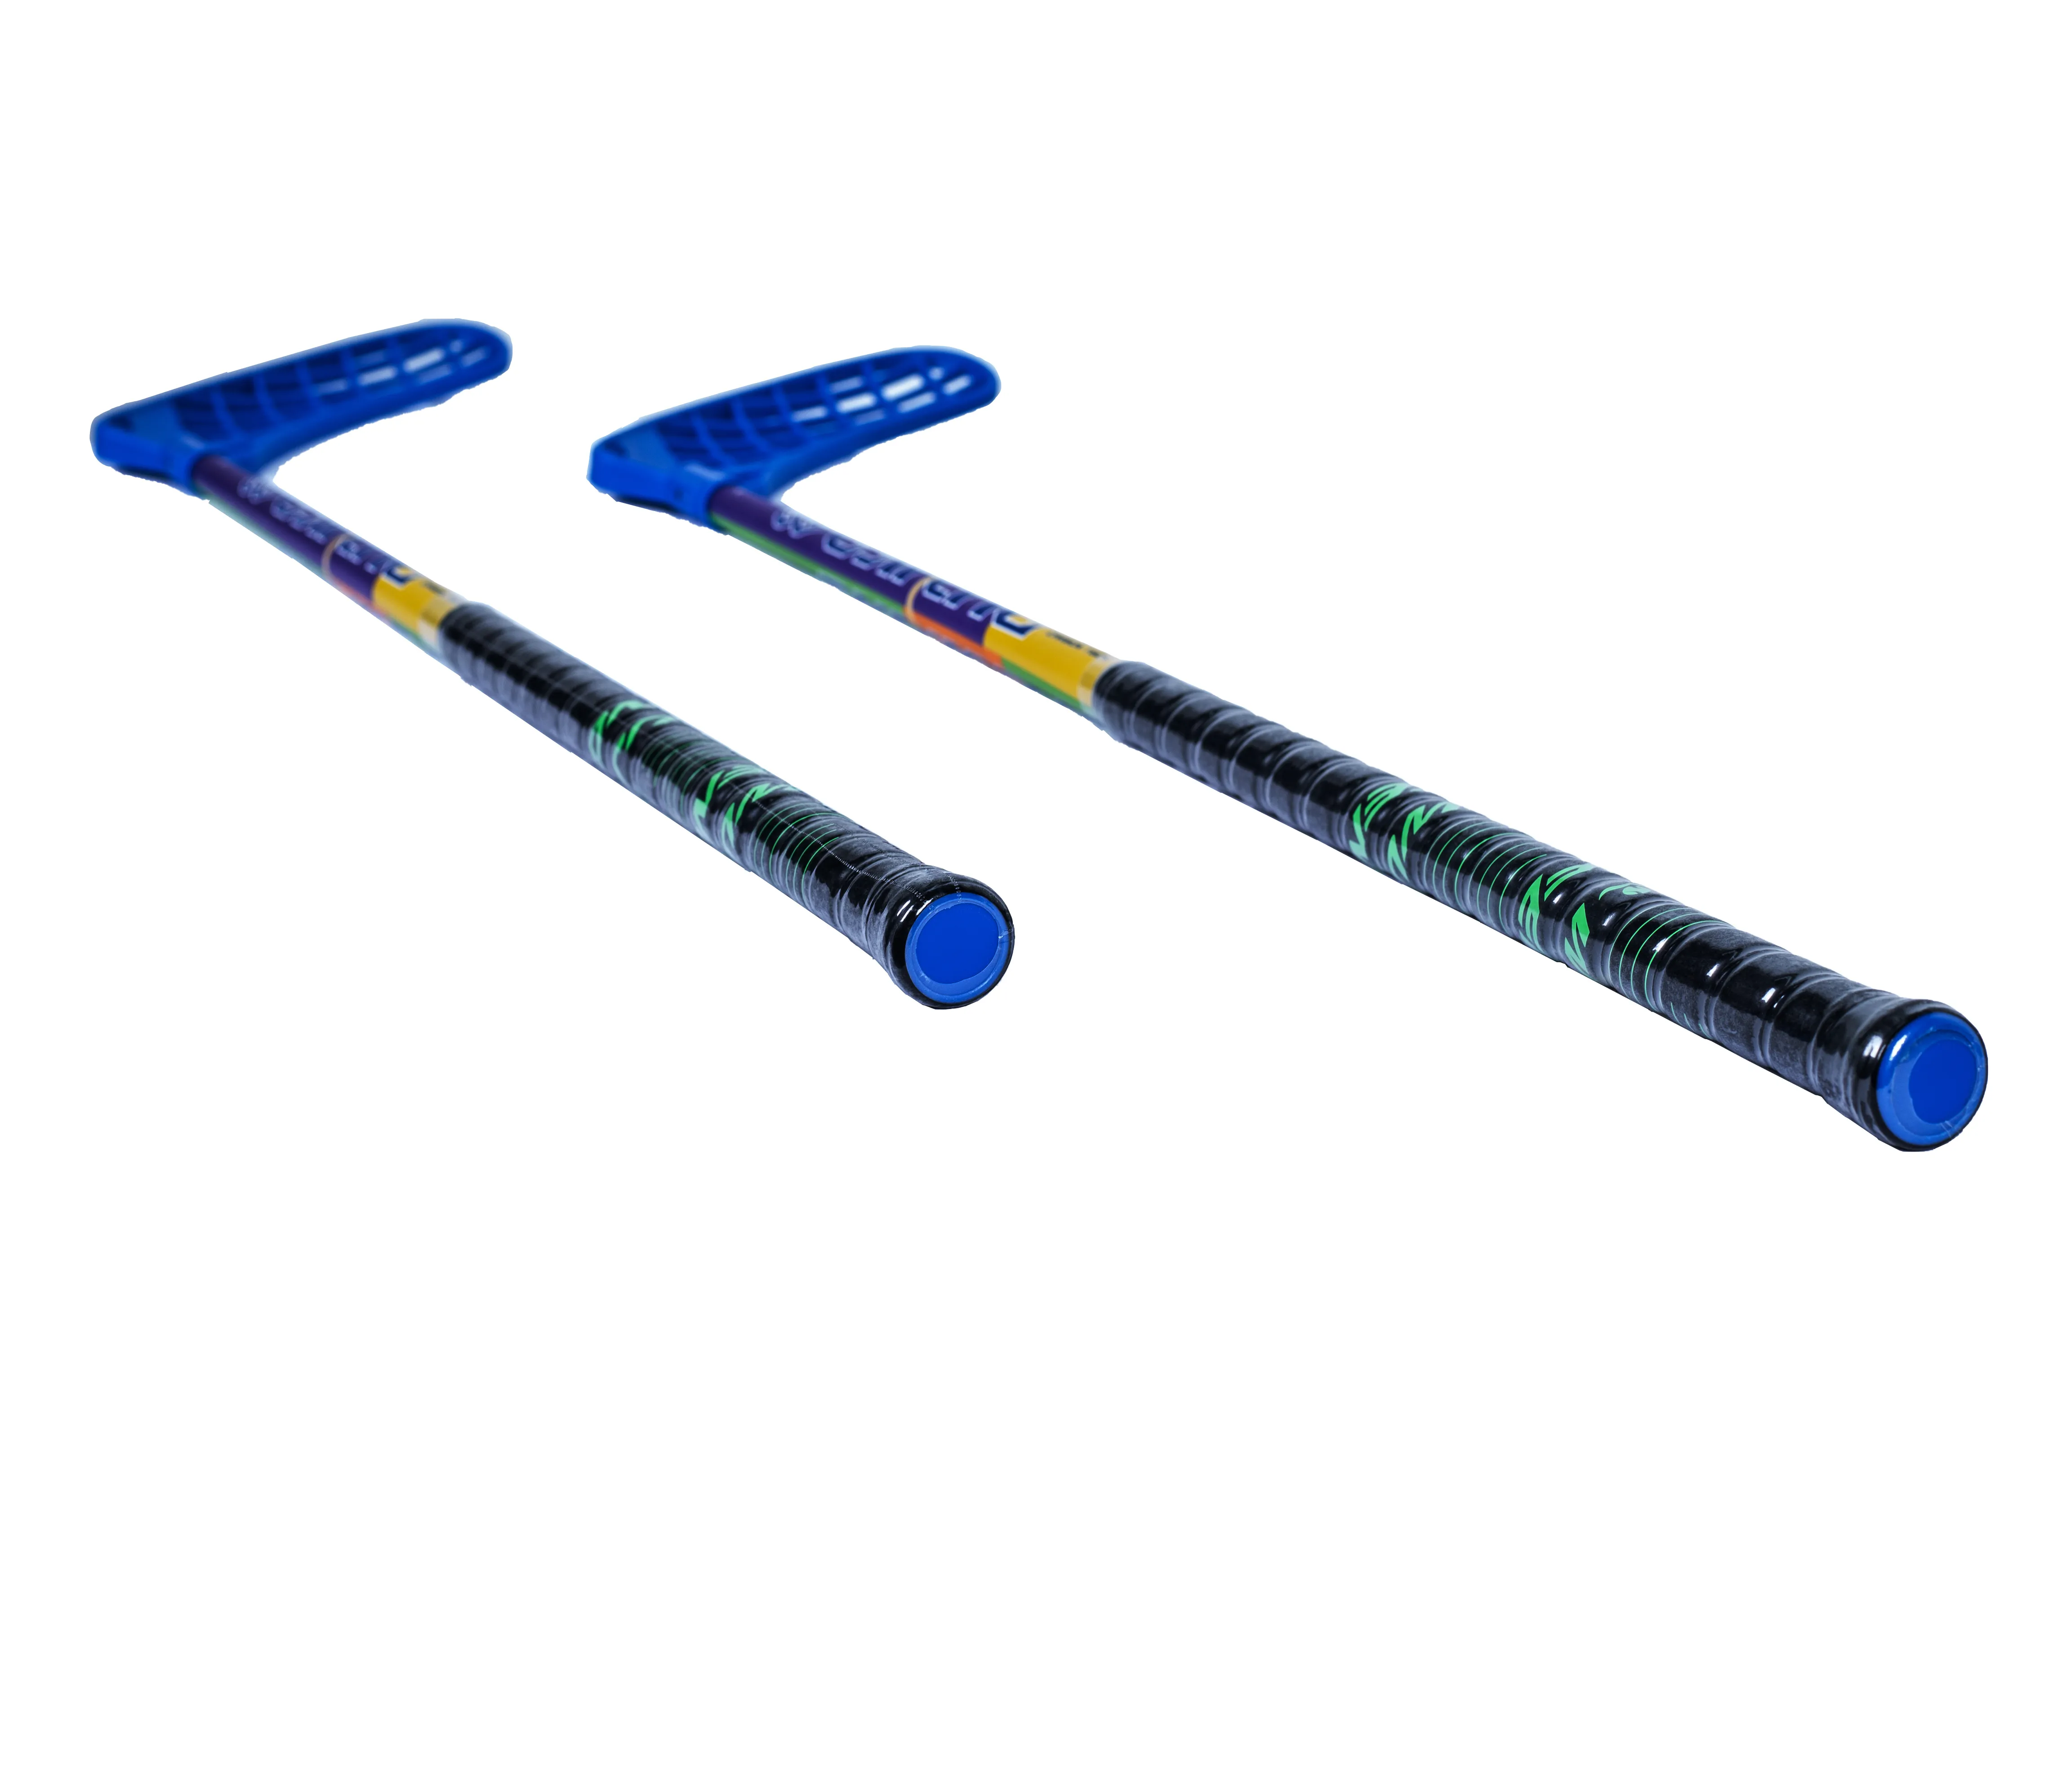 Grosir tongkat hoki es Logo khusus kelas atas dan tongkat hoki es serat kaca karbon berkualitas tinggi dengan harga murah